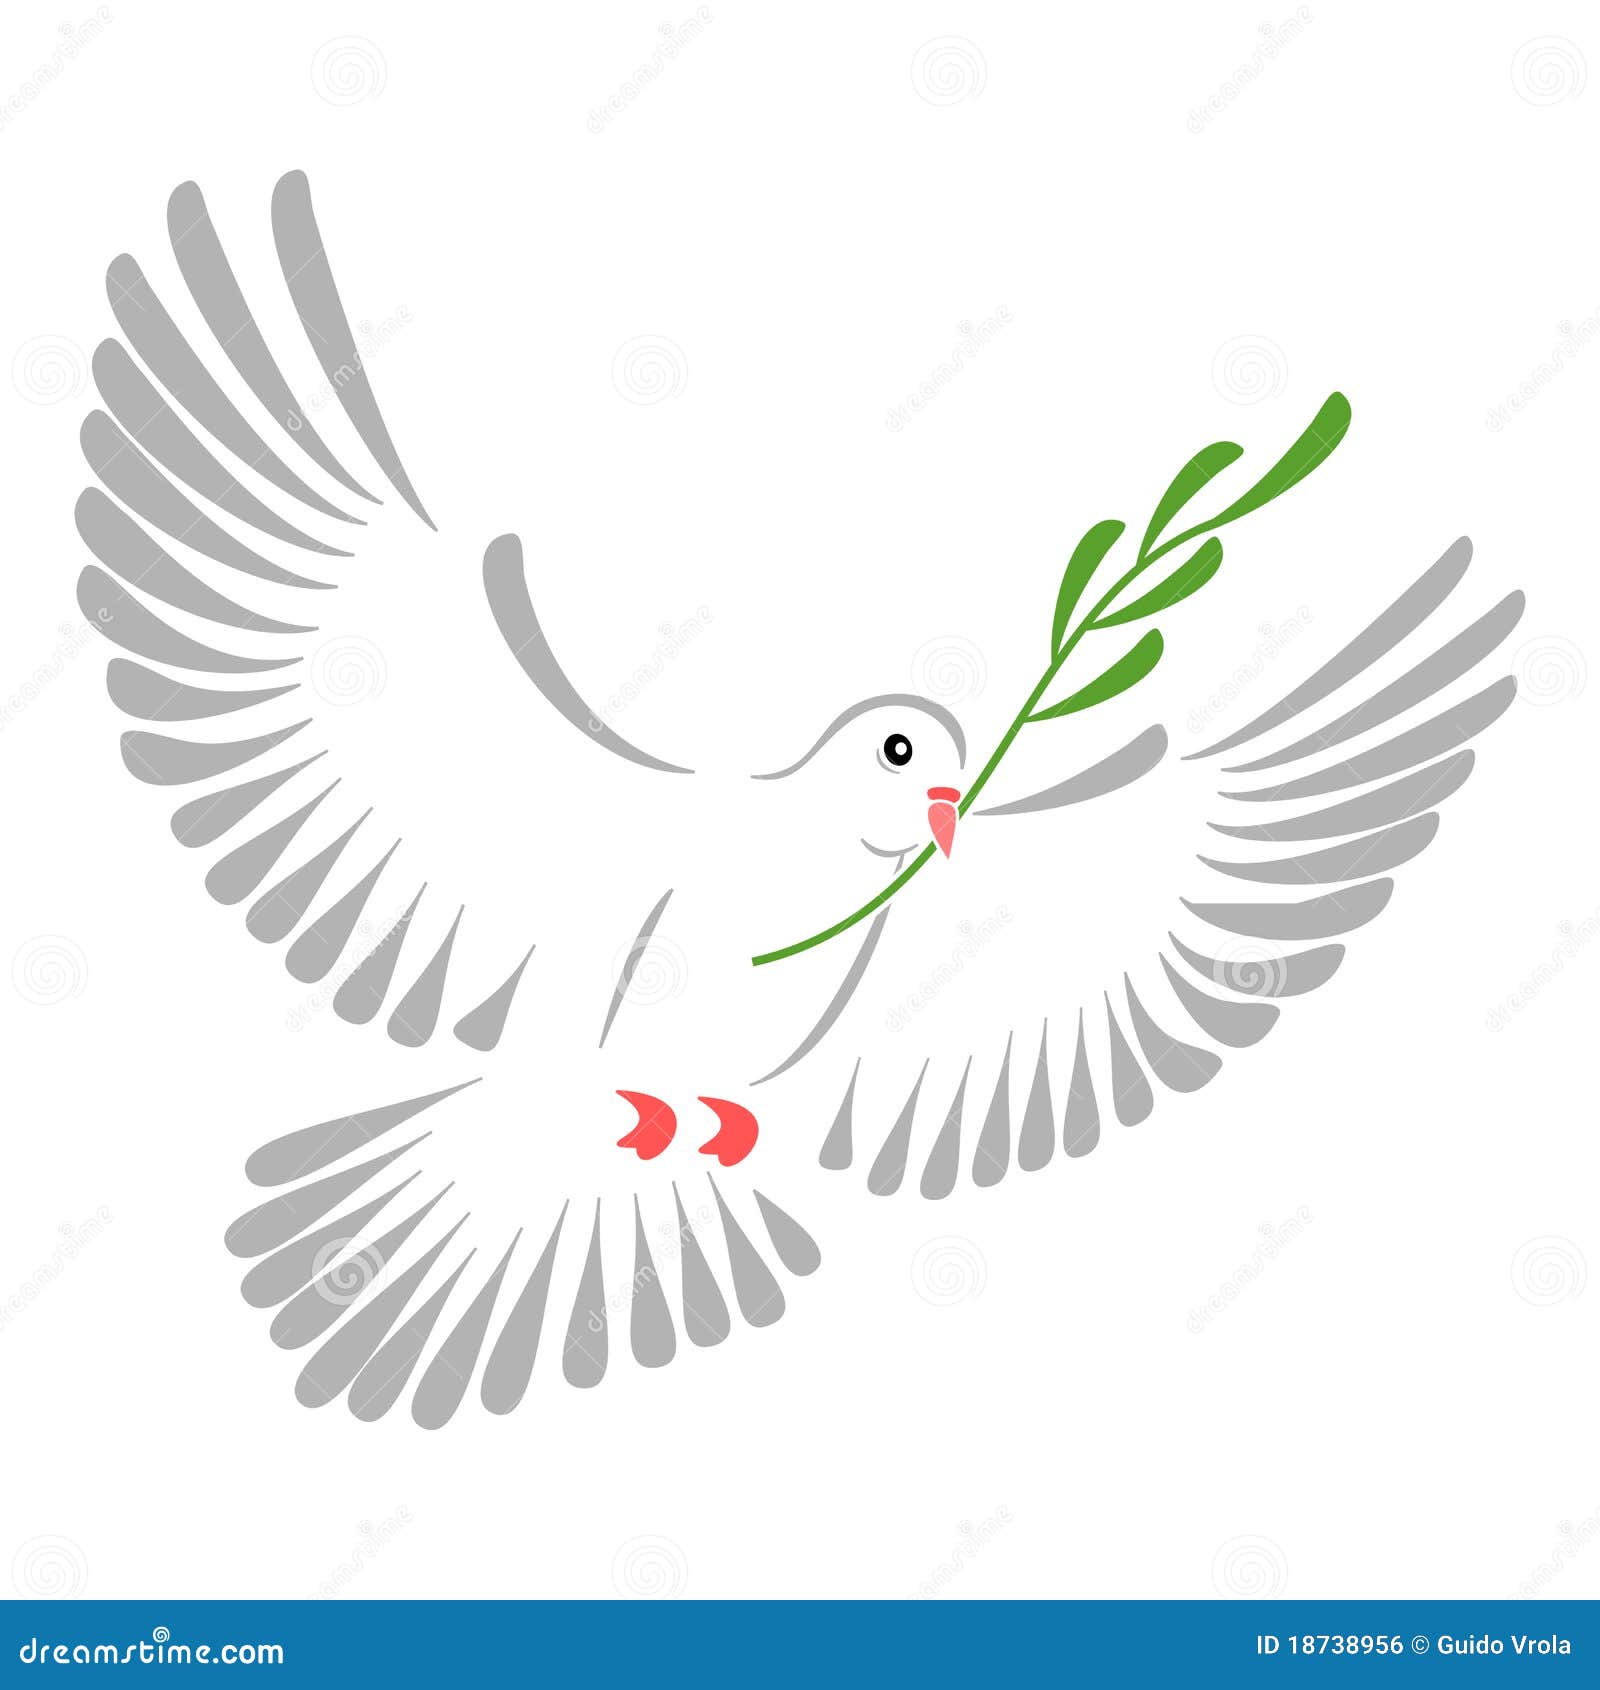 Colomba di bianco. Illustrazione di alta risoluzione di una colomba stilizzata di bianco.